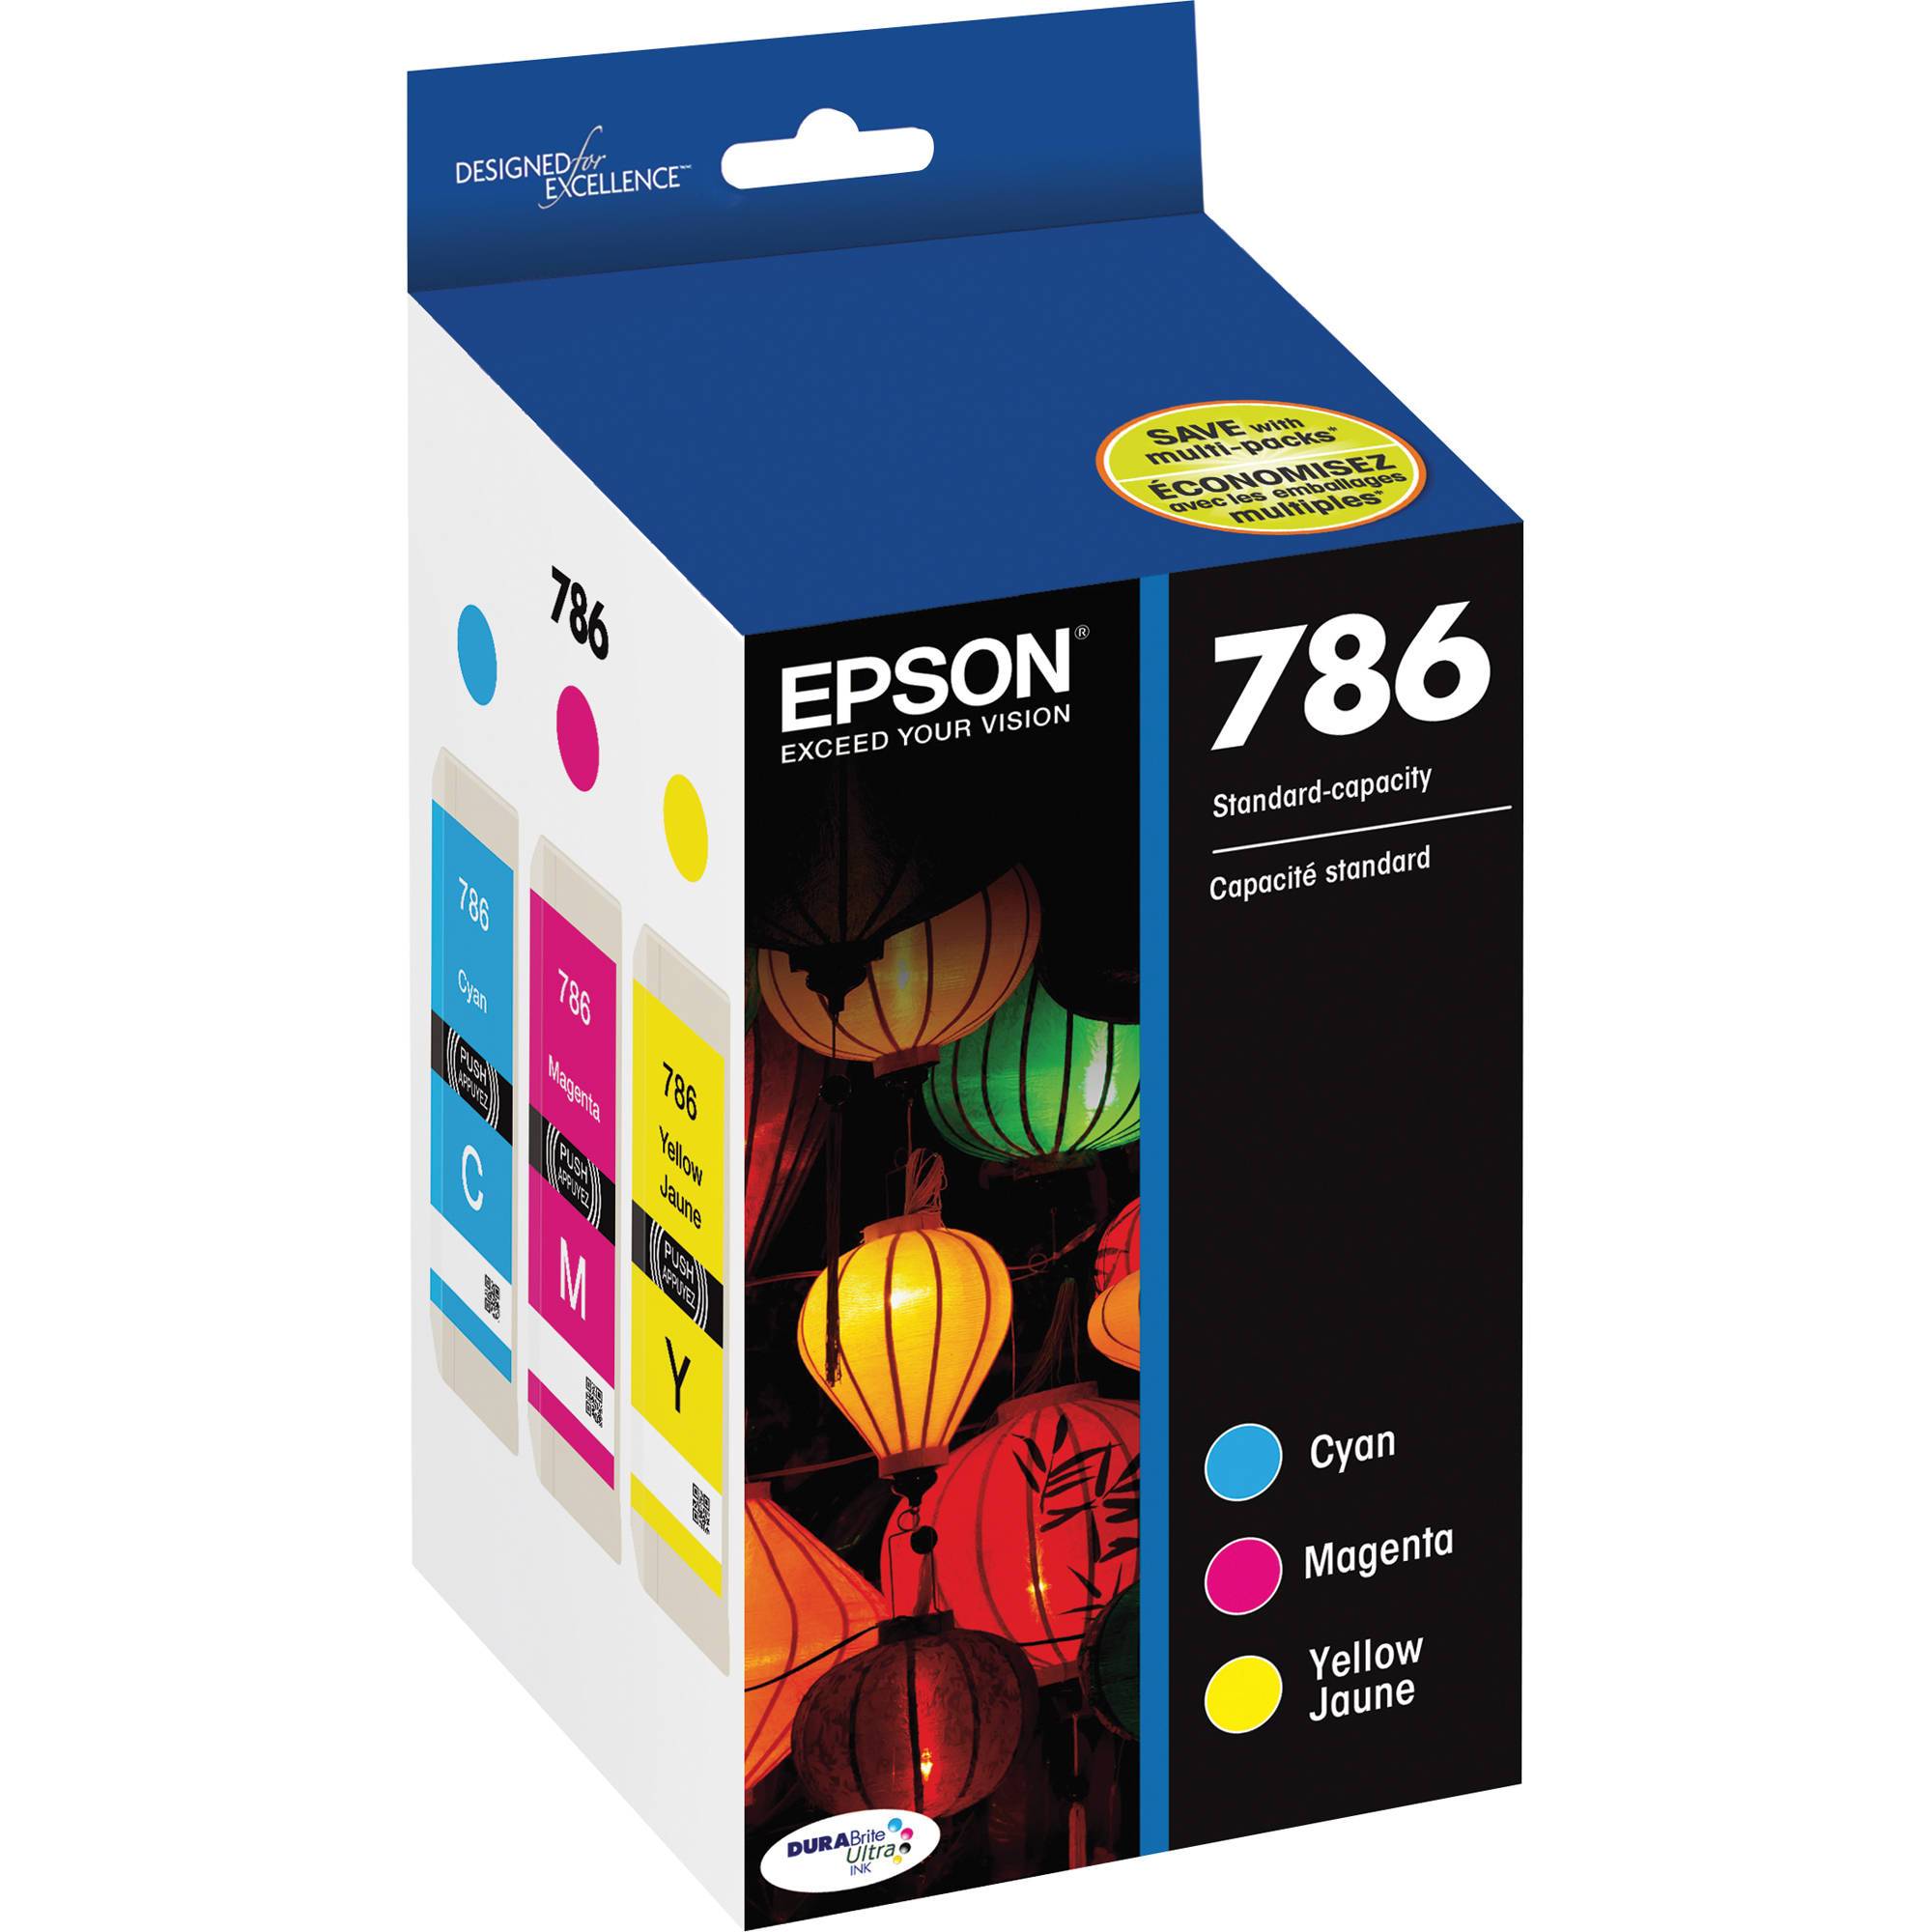 Absolute Toner Epson 786 Original Genuine OEM Combo Ink Cartridge | T786120BCS Original Epson Cartridge